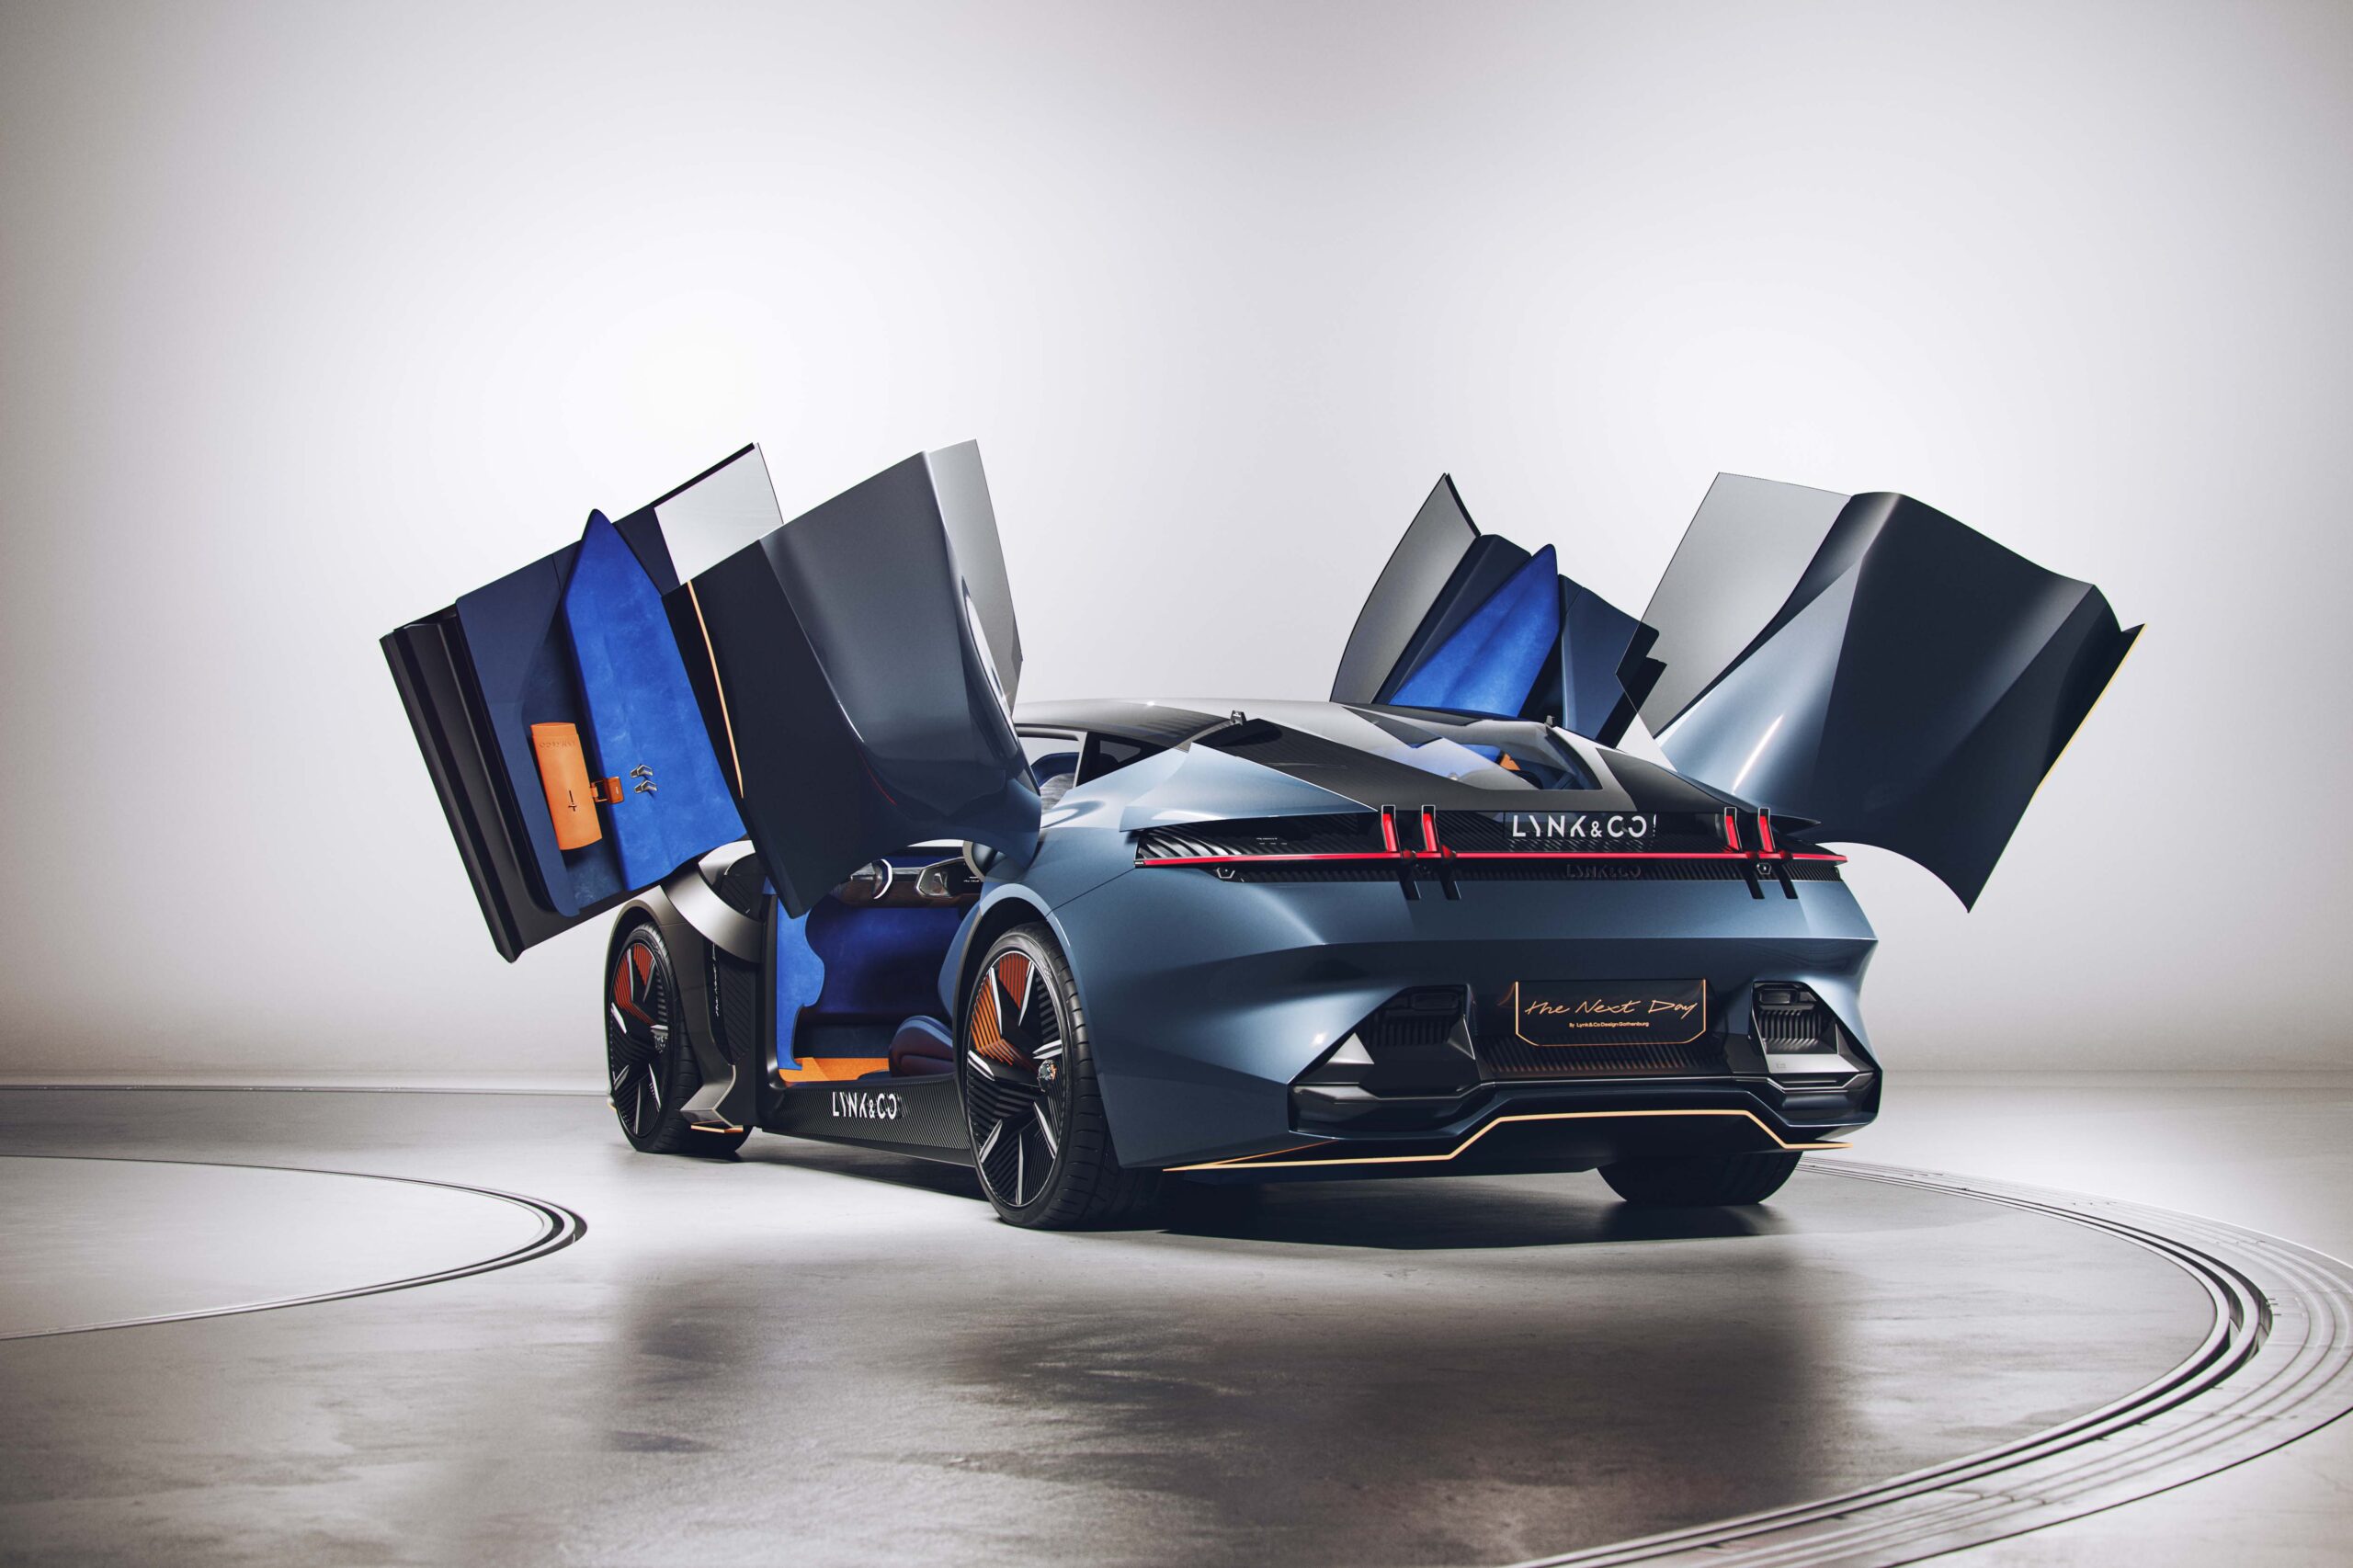 Envisage Group se asocia con Lynk & Co en la construcción del automóvil conceptual ‘The Next Day’